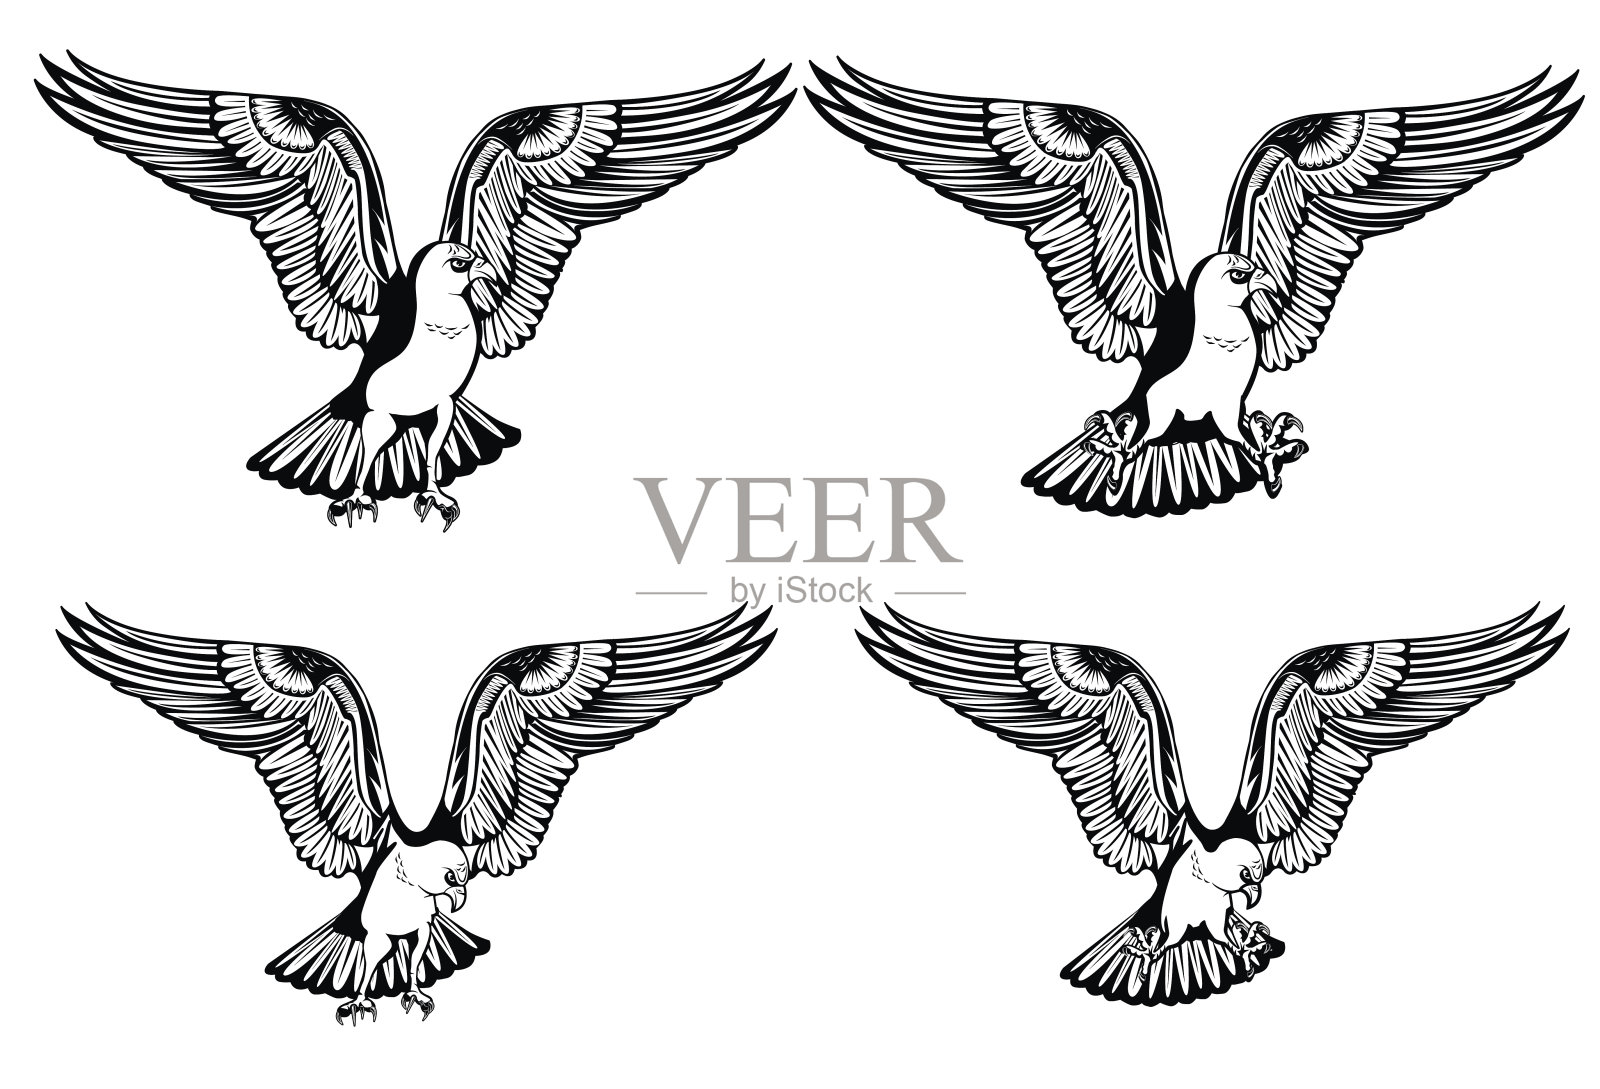 您的打印设计和互联网上的鹰的爪子和头的不同安排的图像。矢量插图。设计元素图片